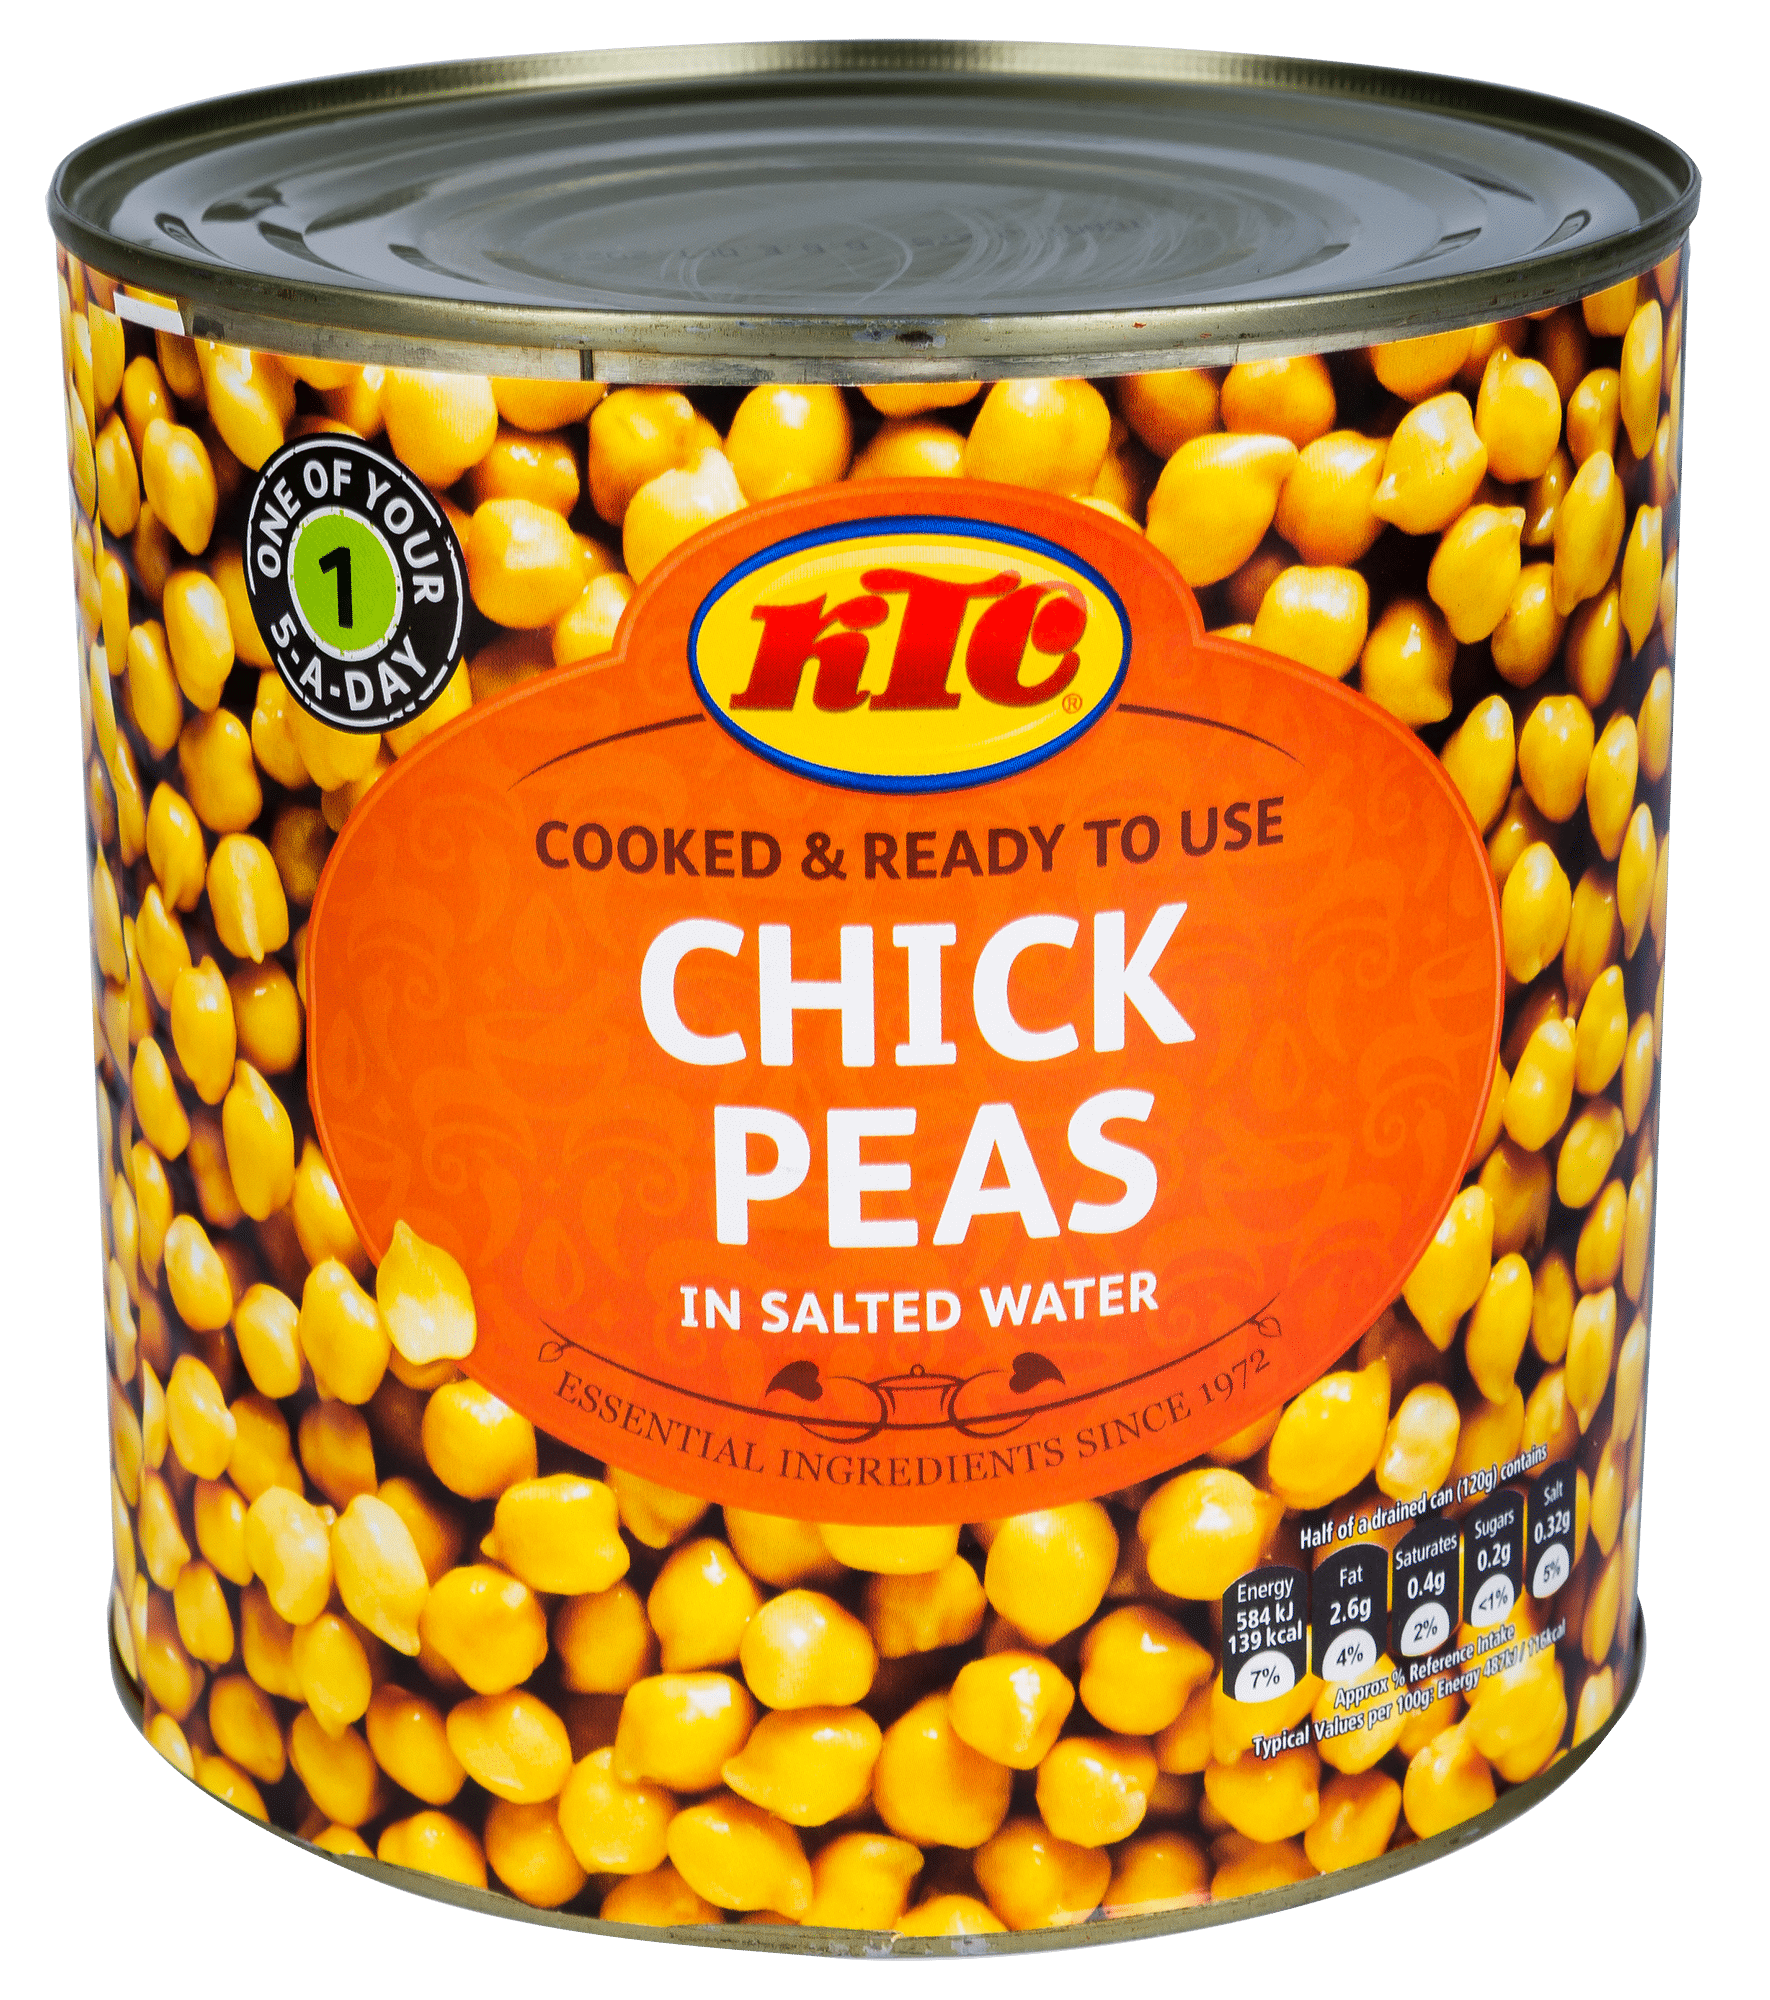 Cieciorka konserwowa (Chick Peas) 2,55kg/6 KTC puszka e*